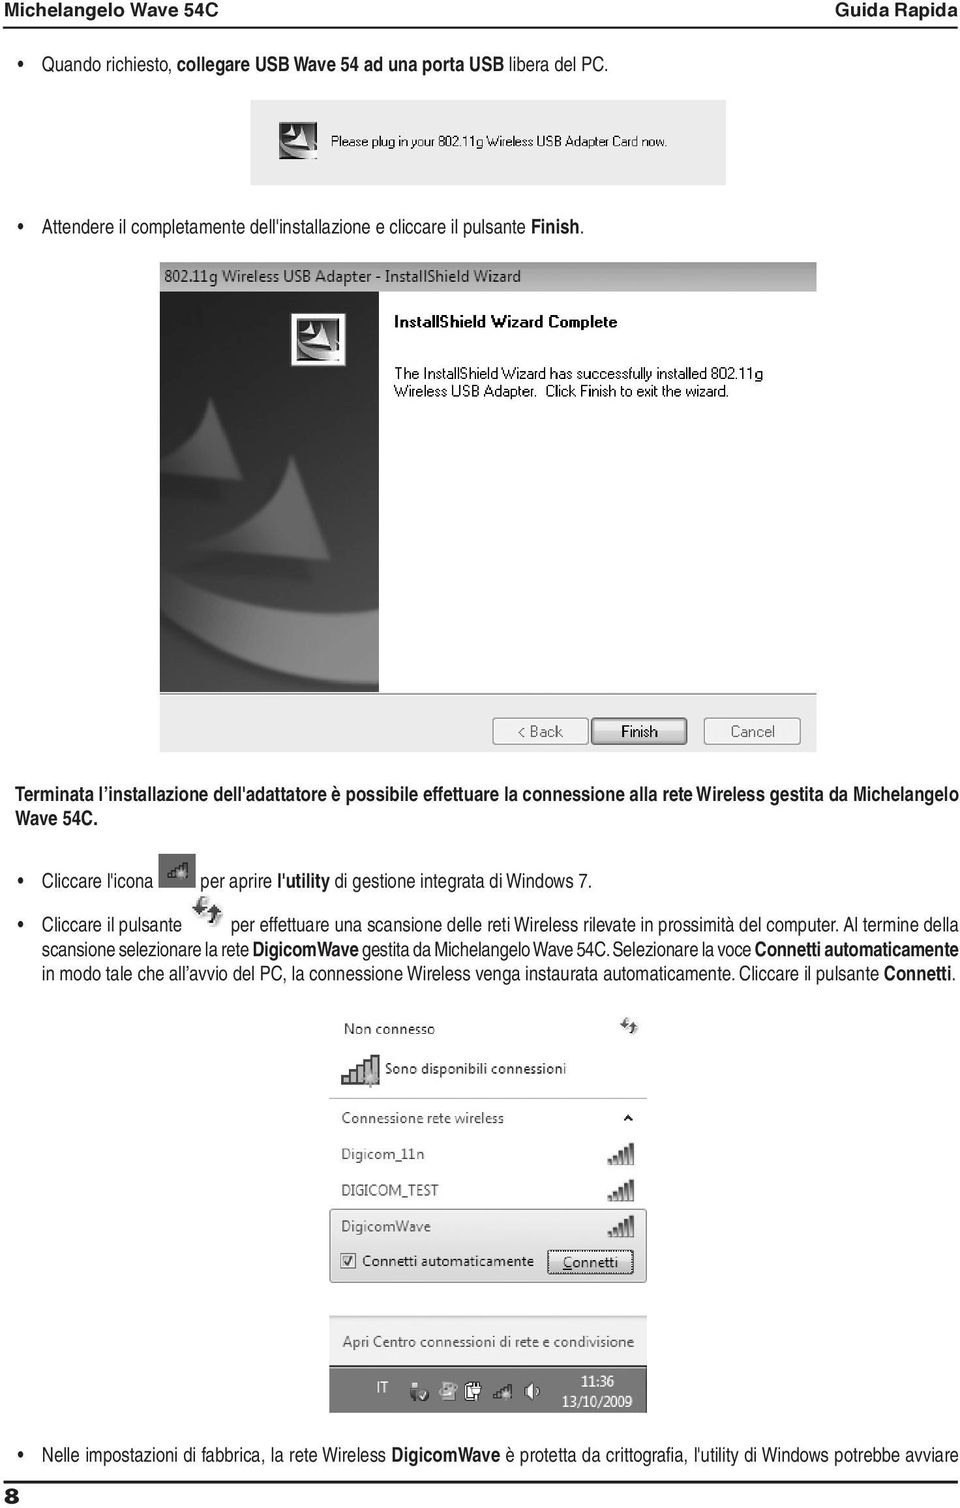 Cliccare l'icona per aprire l'utility di gestione integrata di Windows 7. Cliccare il pulsante per effettuare una scansione delle reti Wireless rilevate in prossimità del computer.